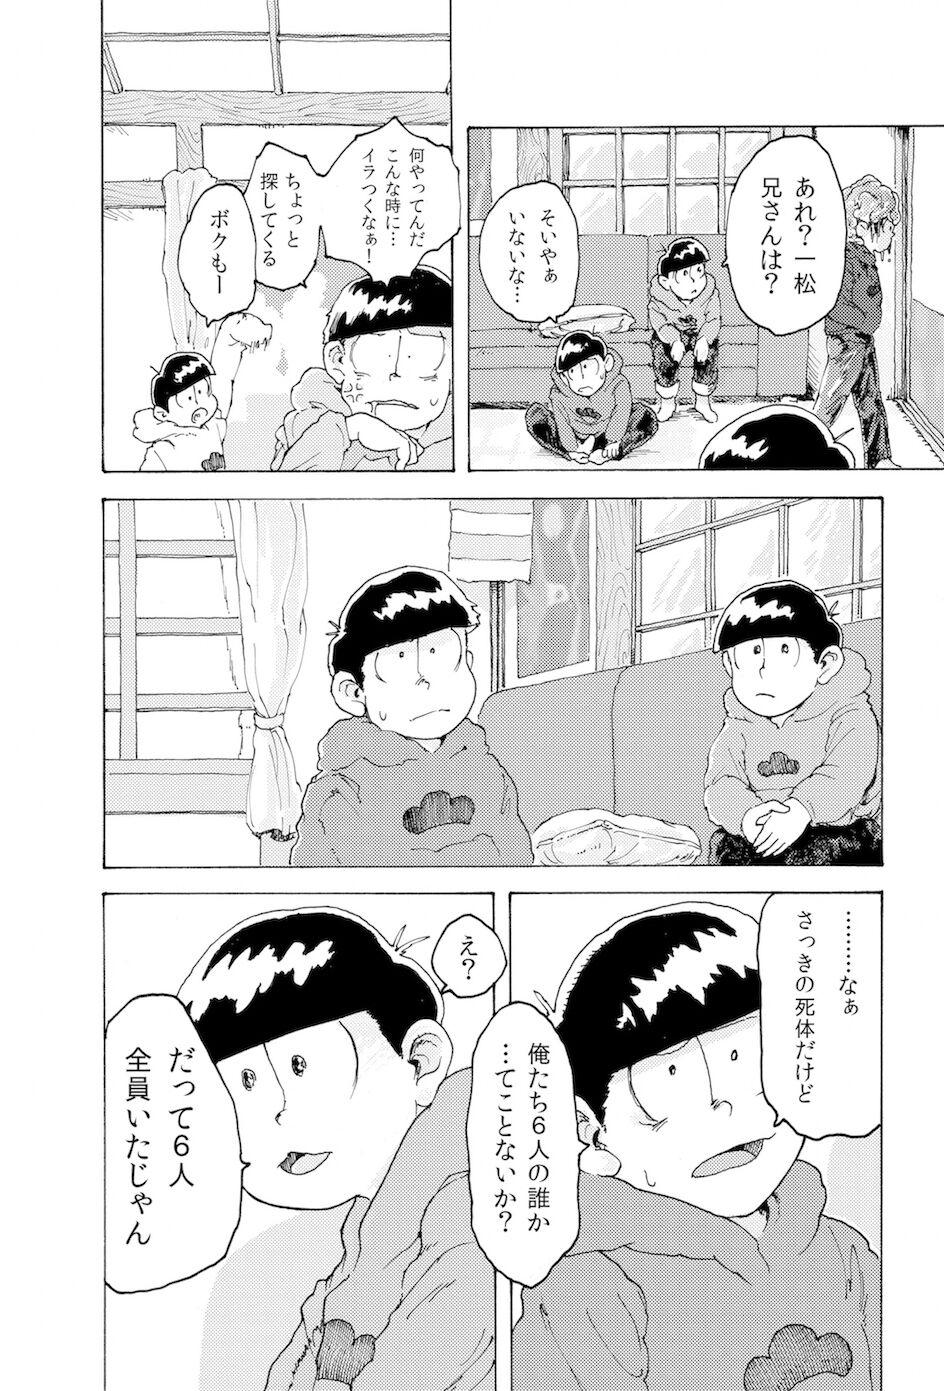 Teensex [Koshigerunasunibusu] WEB Sairoku [R18G] 'AIN'T SIX IS DEATH' - Osomatsu san Tetona - Page 11